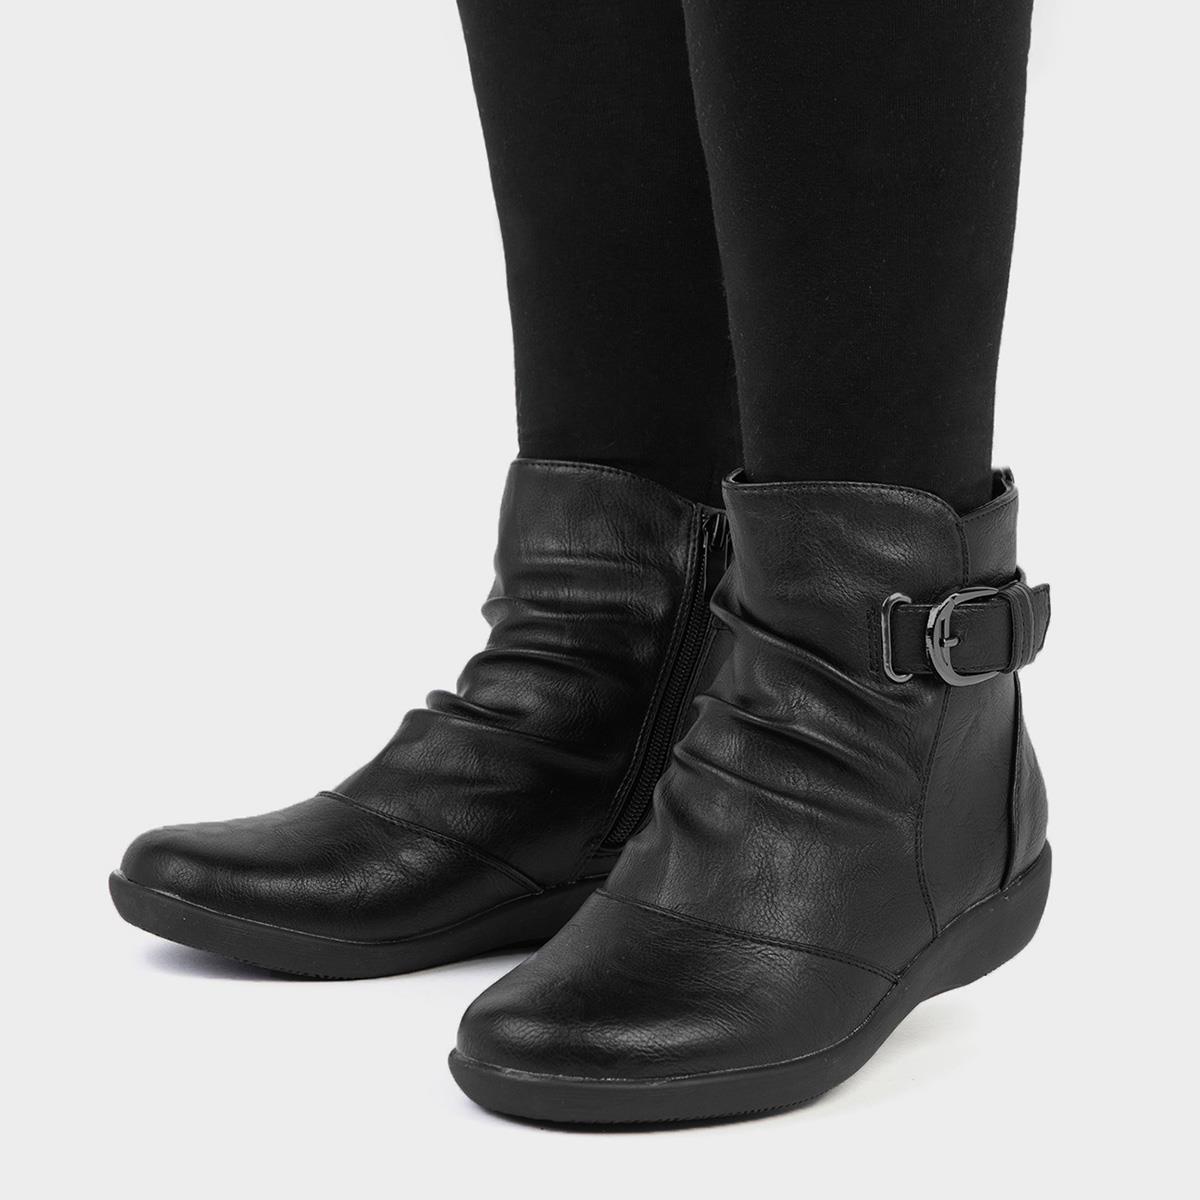 Cushion Walk Belinda Womens Black Ankle Boot-18276 | Shoe Zone